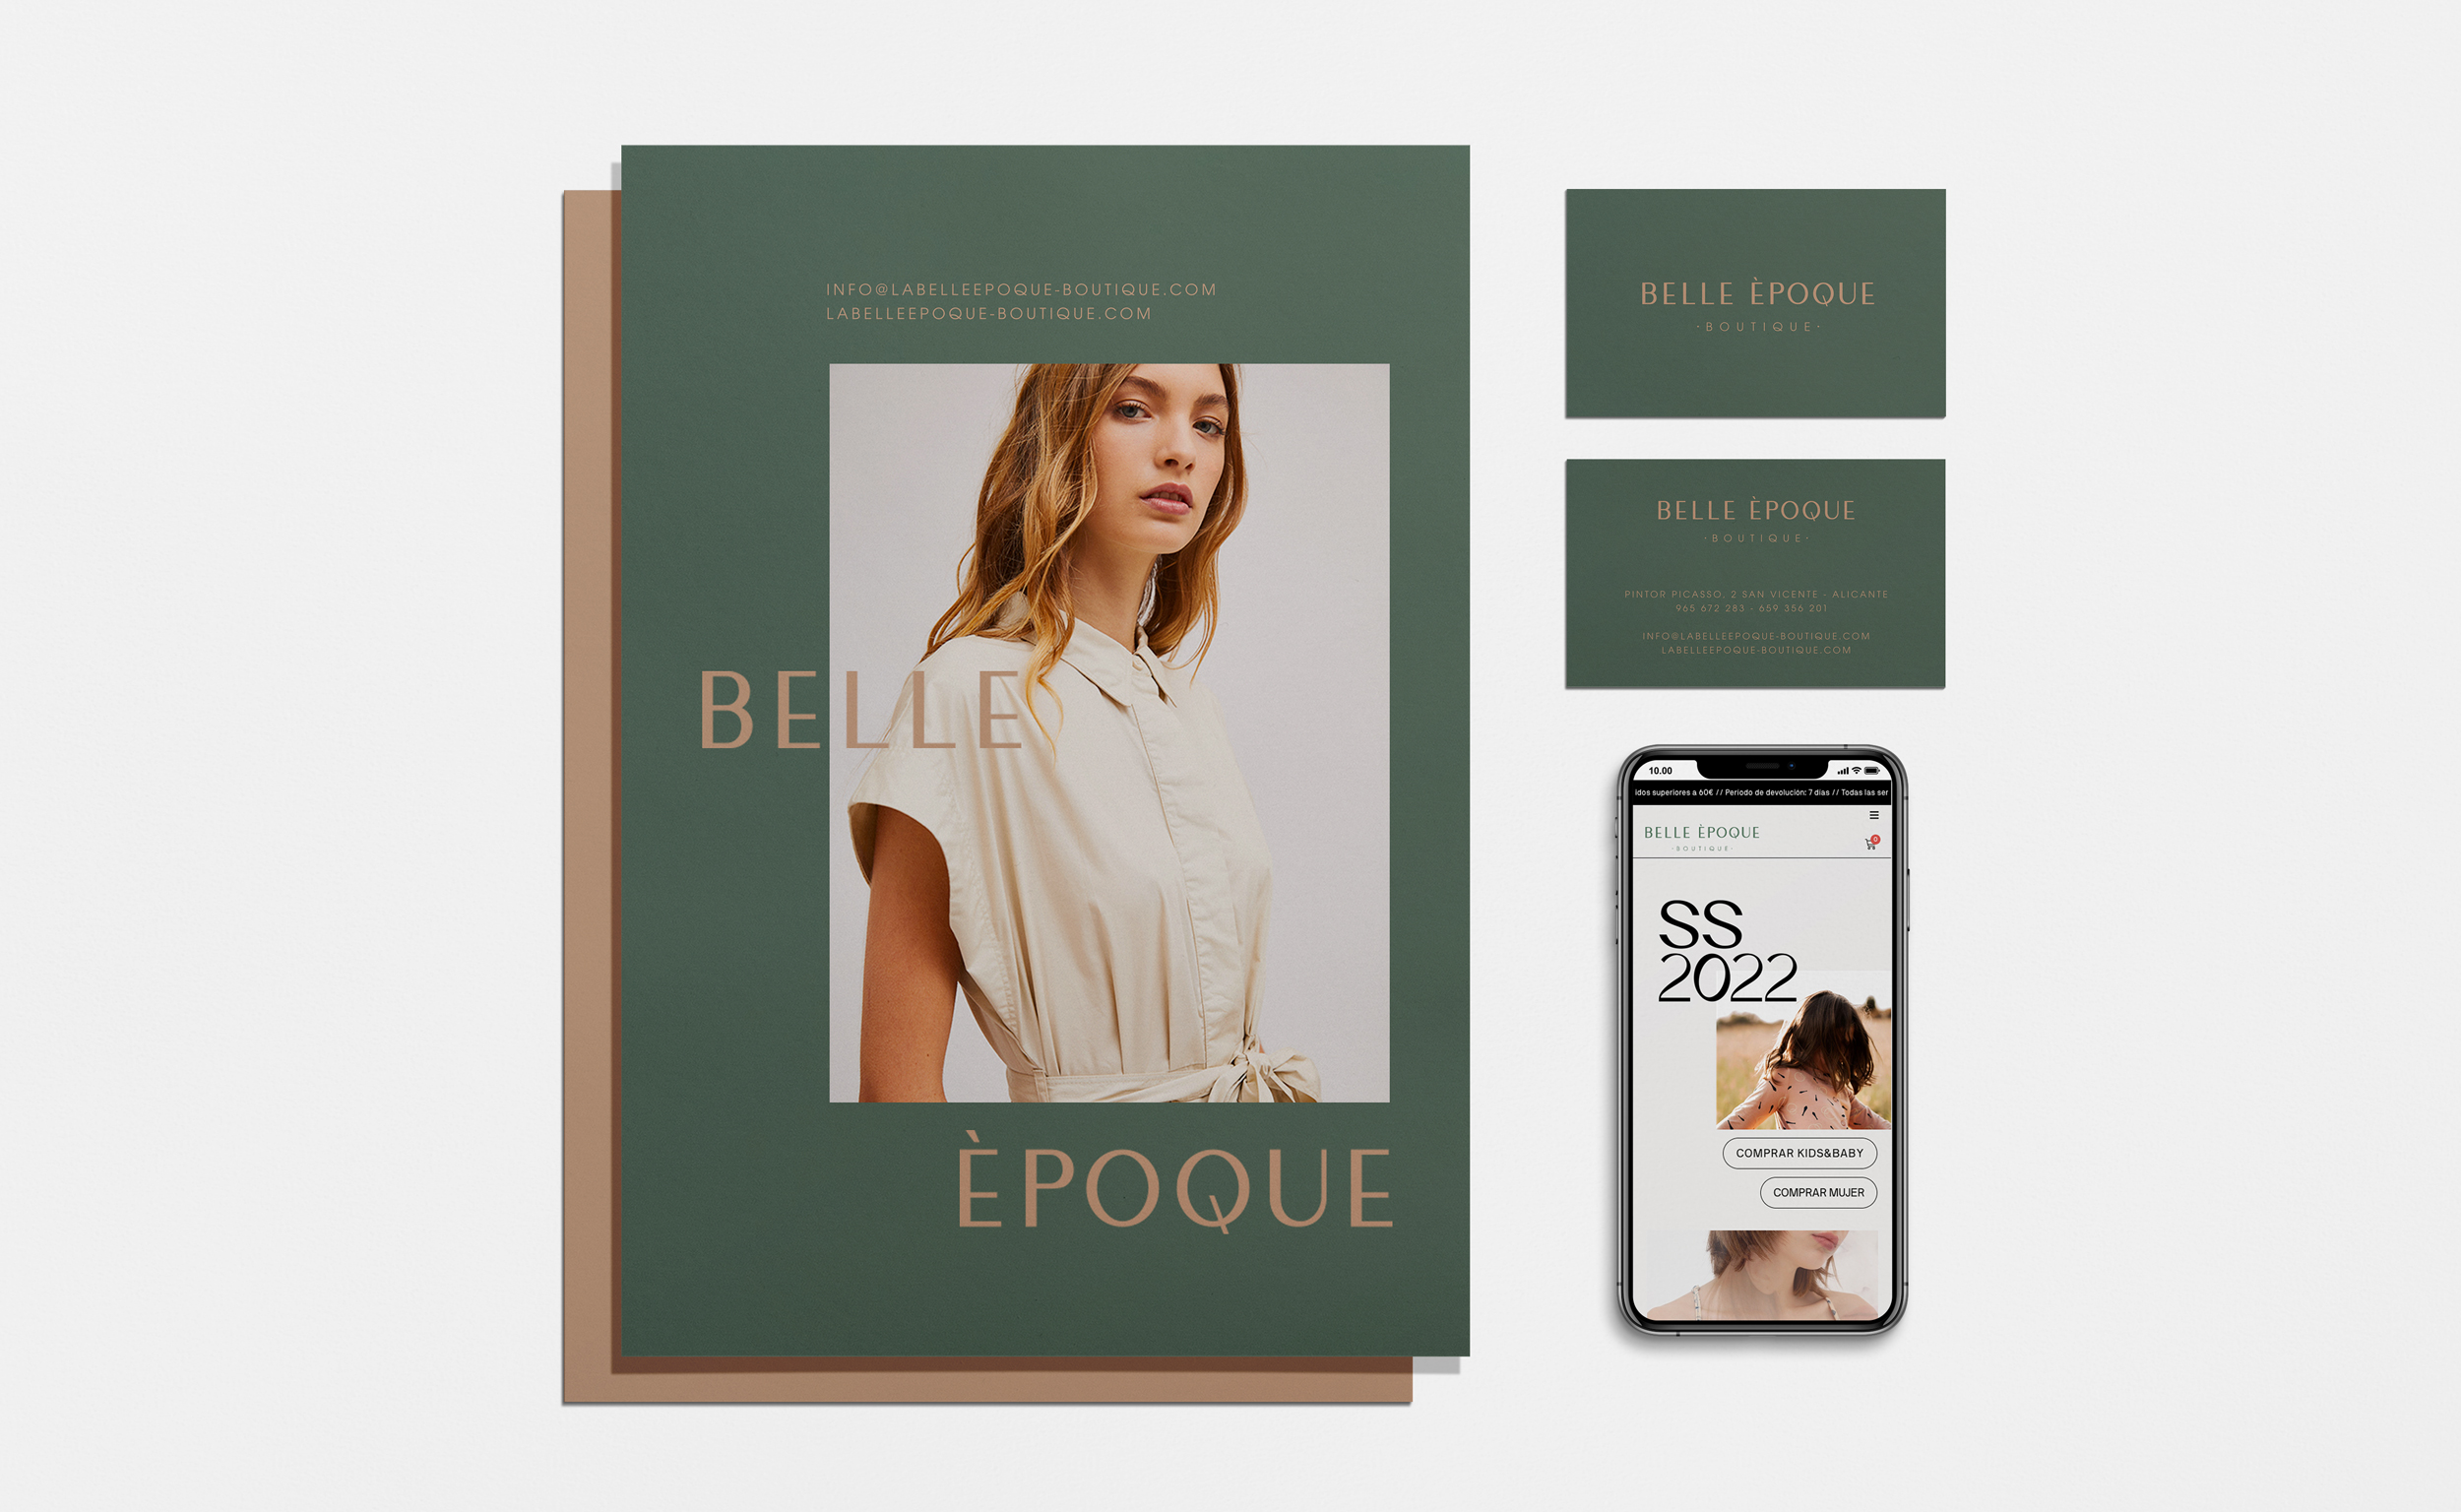 Diseño y desarrollo de identidad visual corporativa para Belle Èpoque. Stationery.